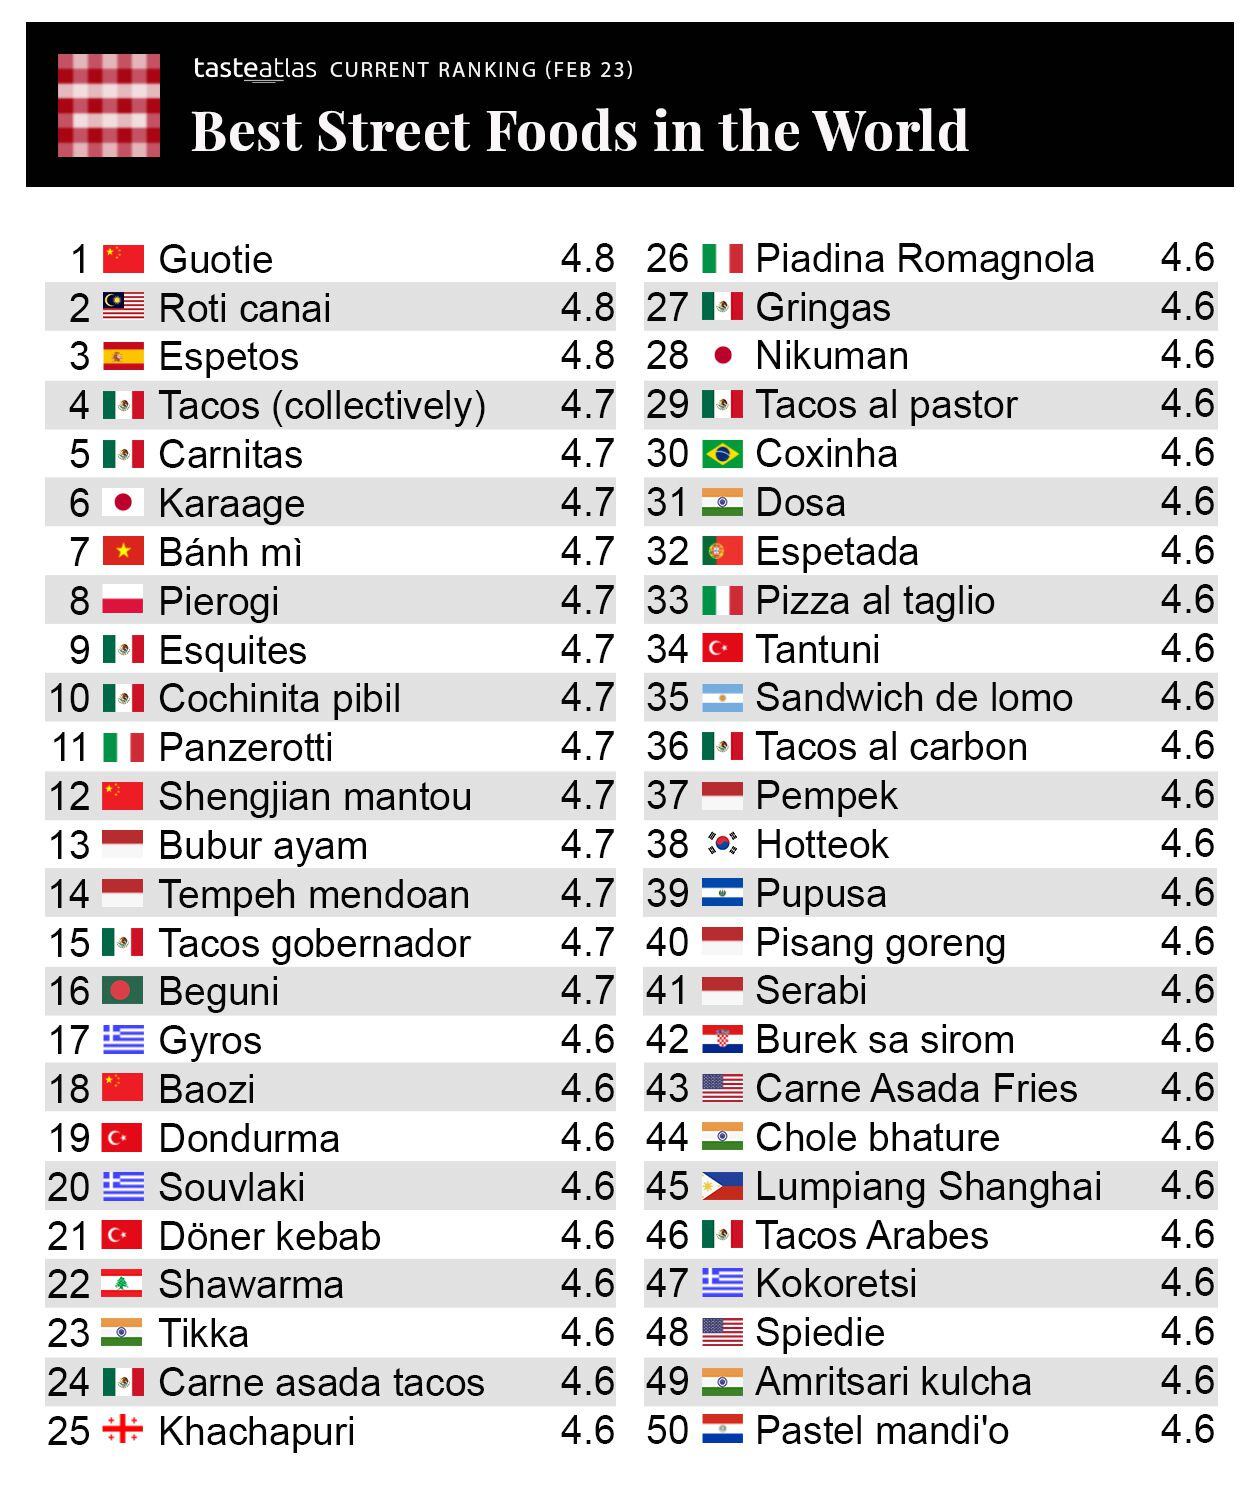 La mejor comida callejera del mundo, según un ranking. (Foto: Facebook / Taste Atlas).